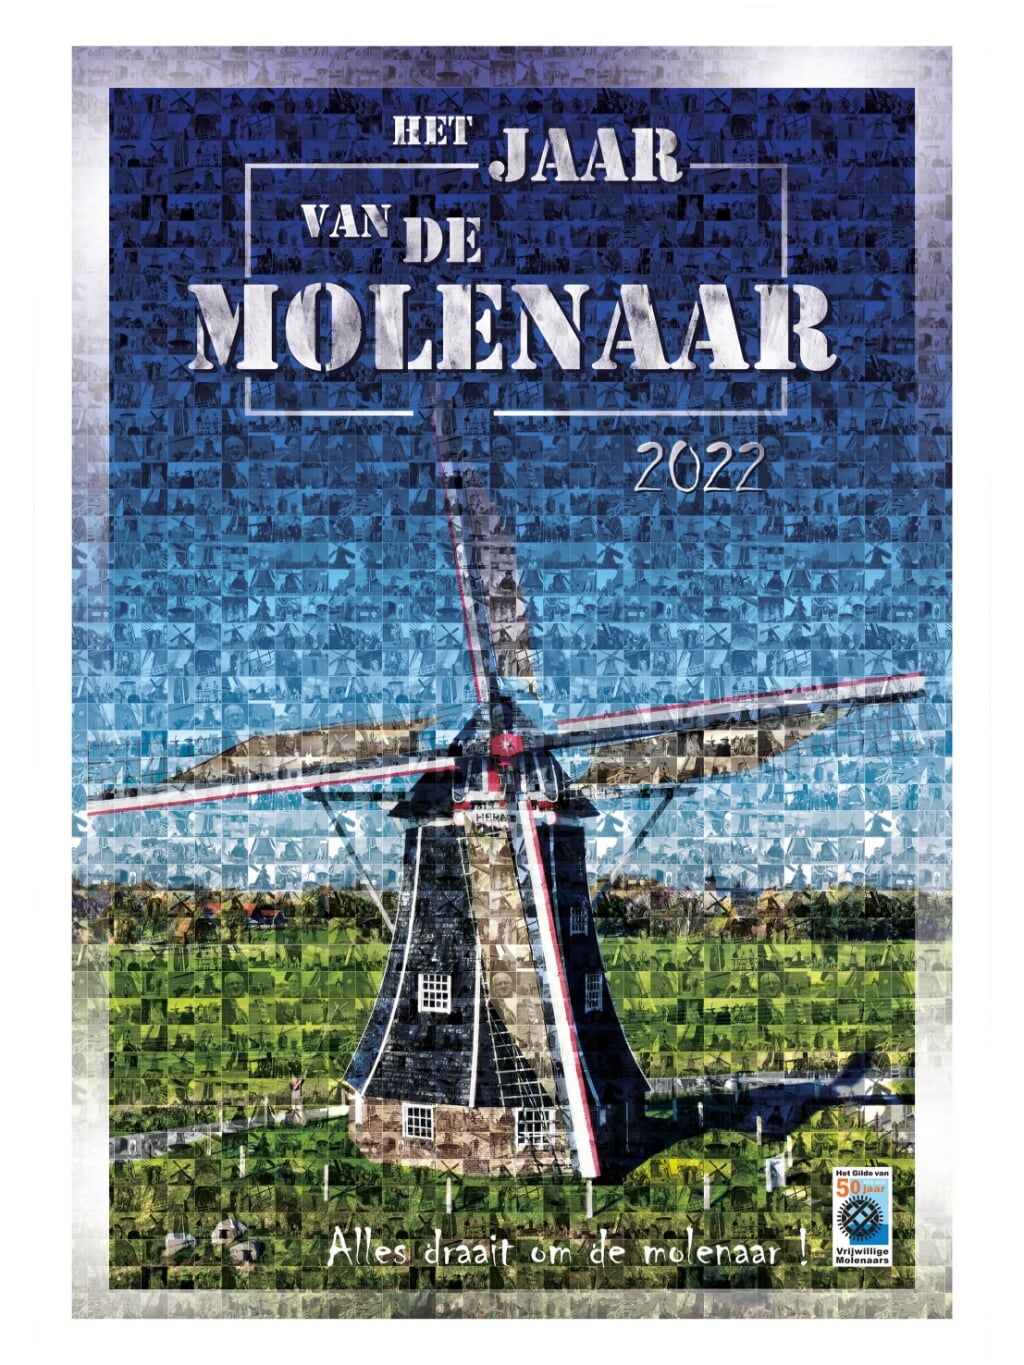 Poster van het Jaar van de Molenaar. In de afbeelding zijn kleine portretjes van molens en molenaars te zien. Foto: Paul van Druten 